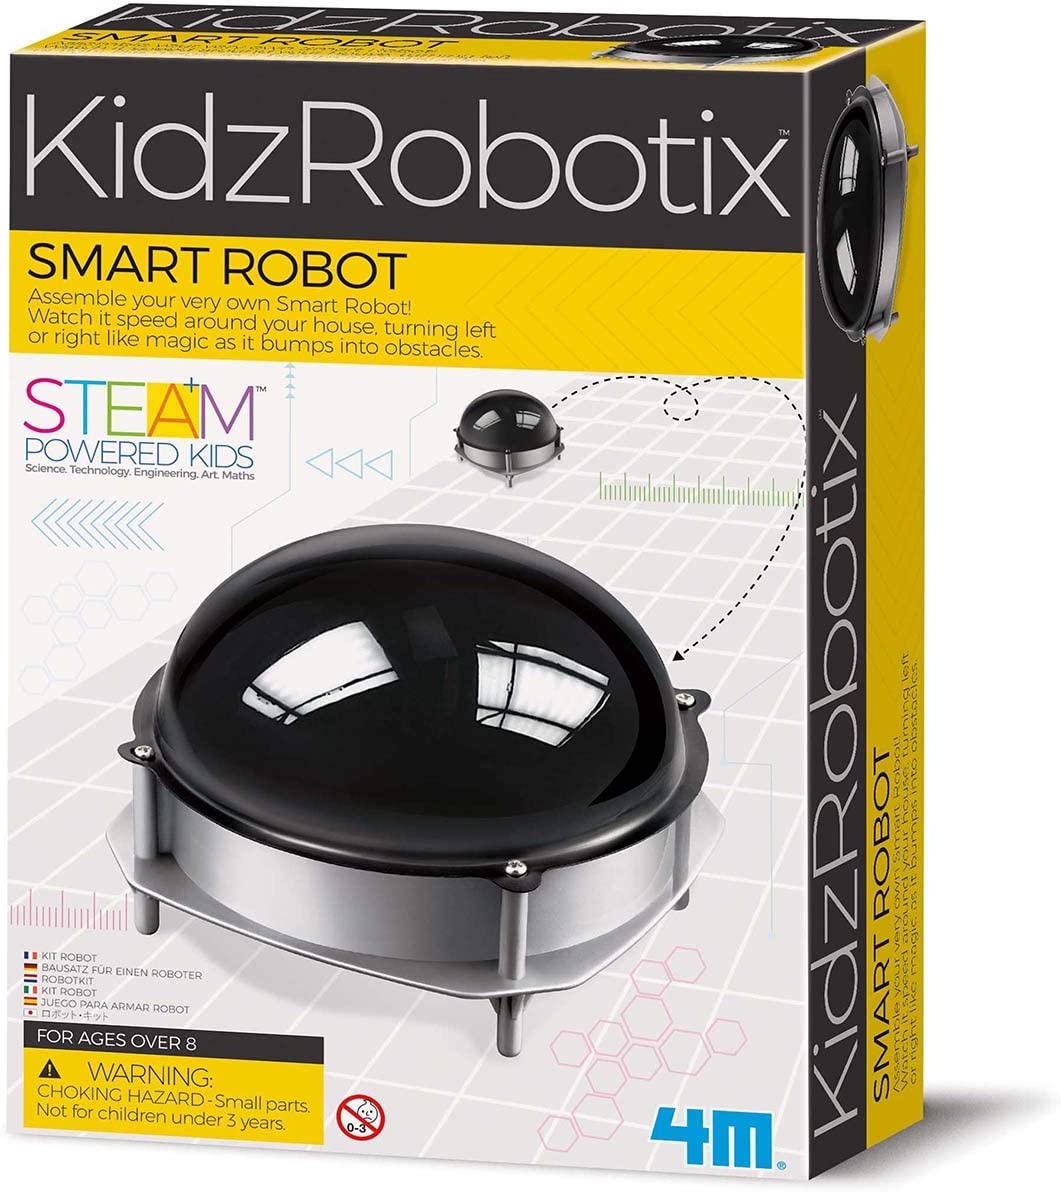 Smart Robot from KidzRobotix